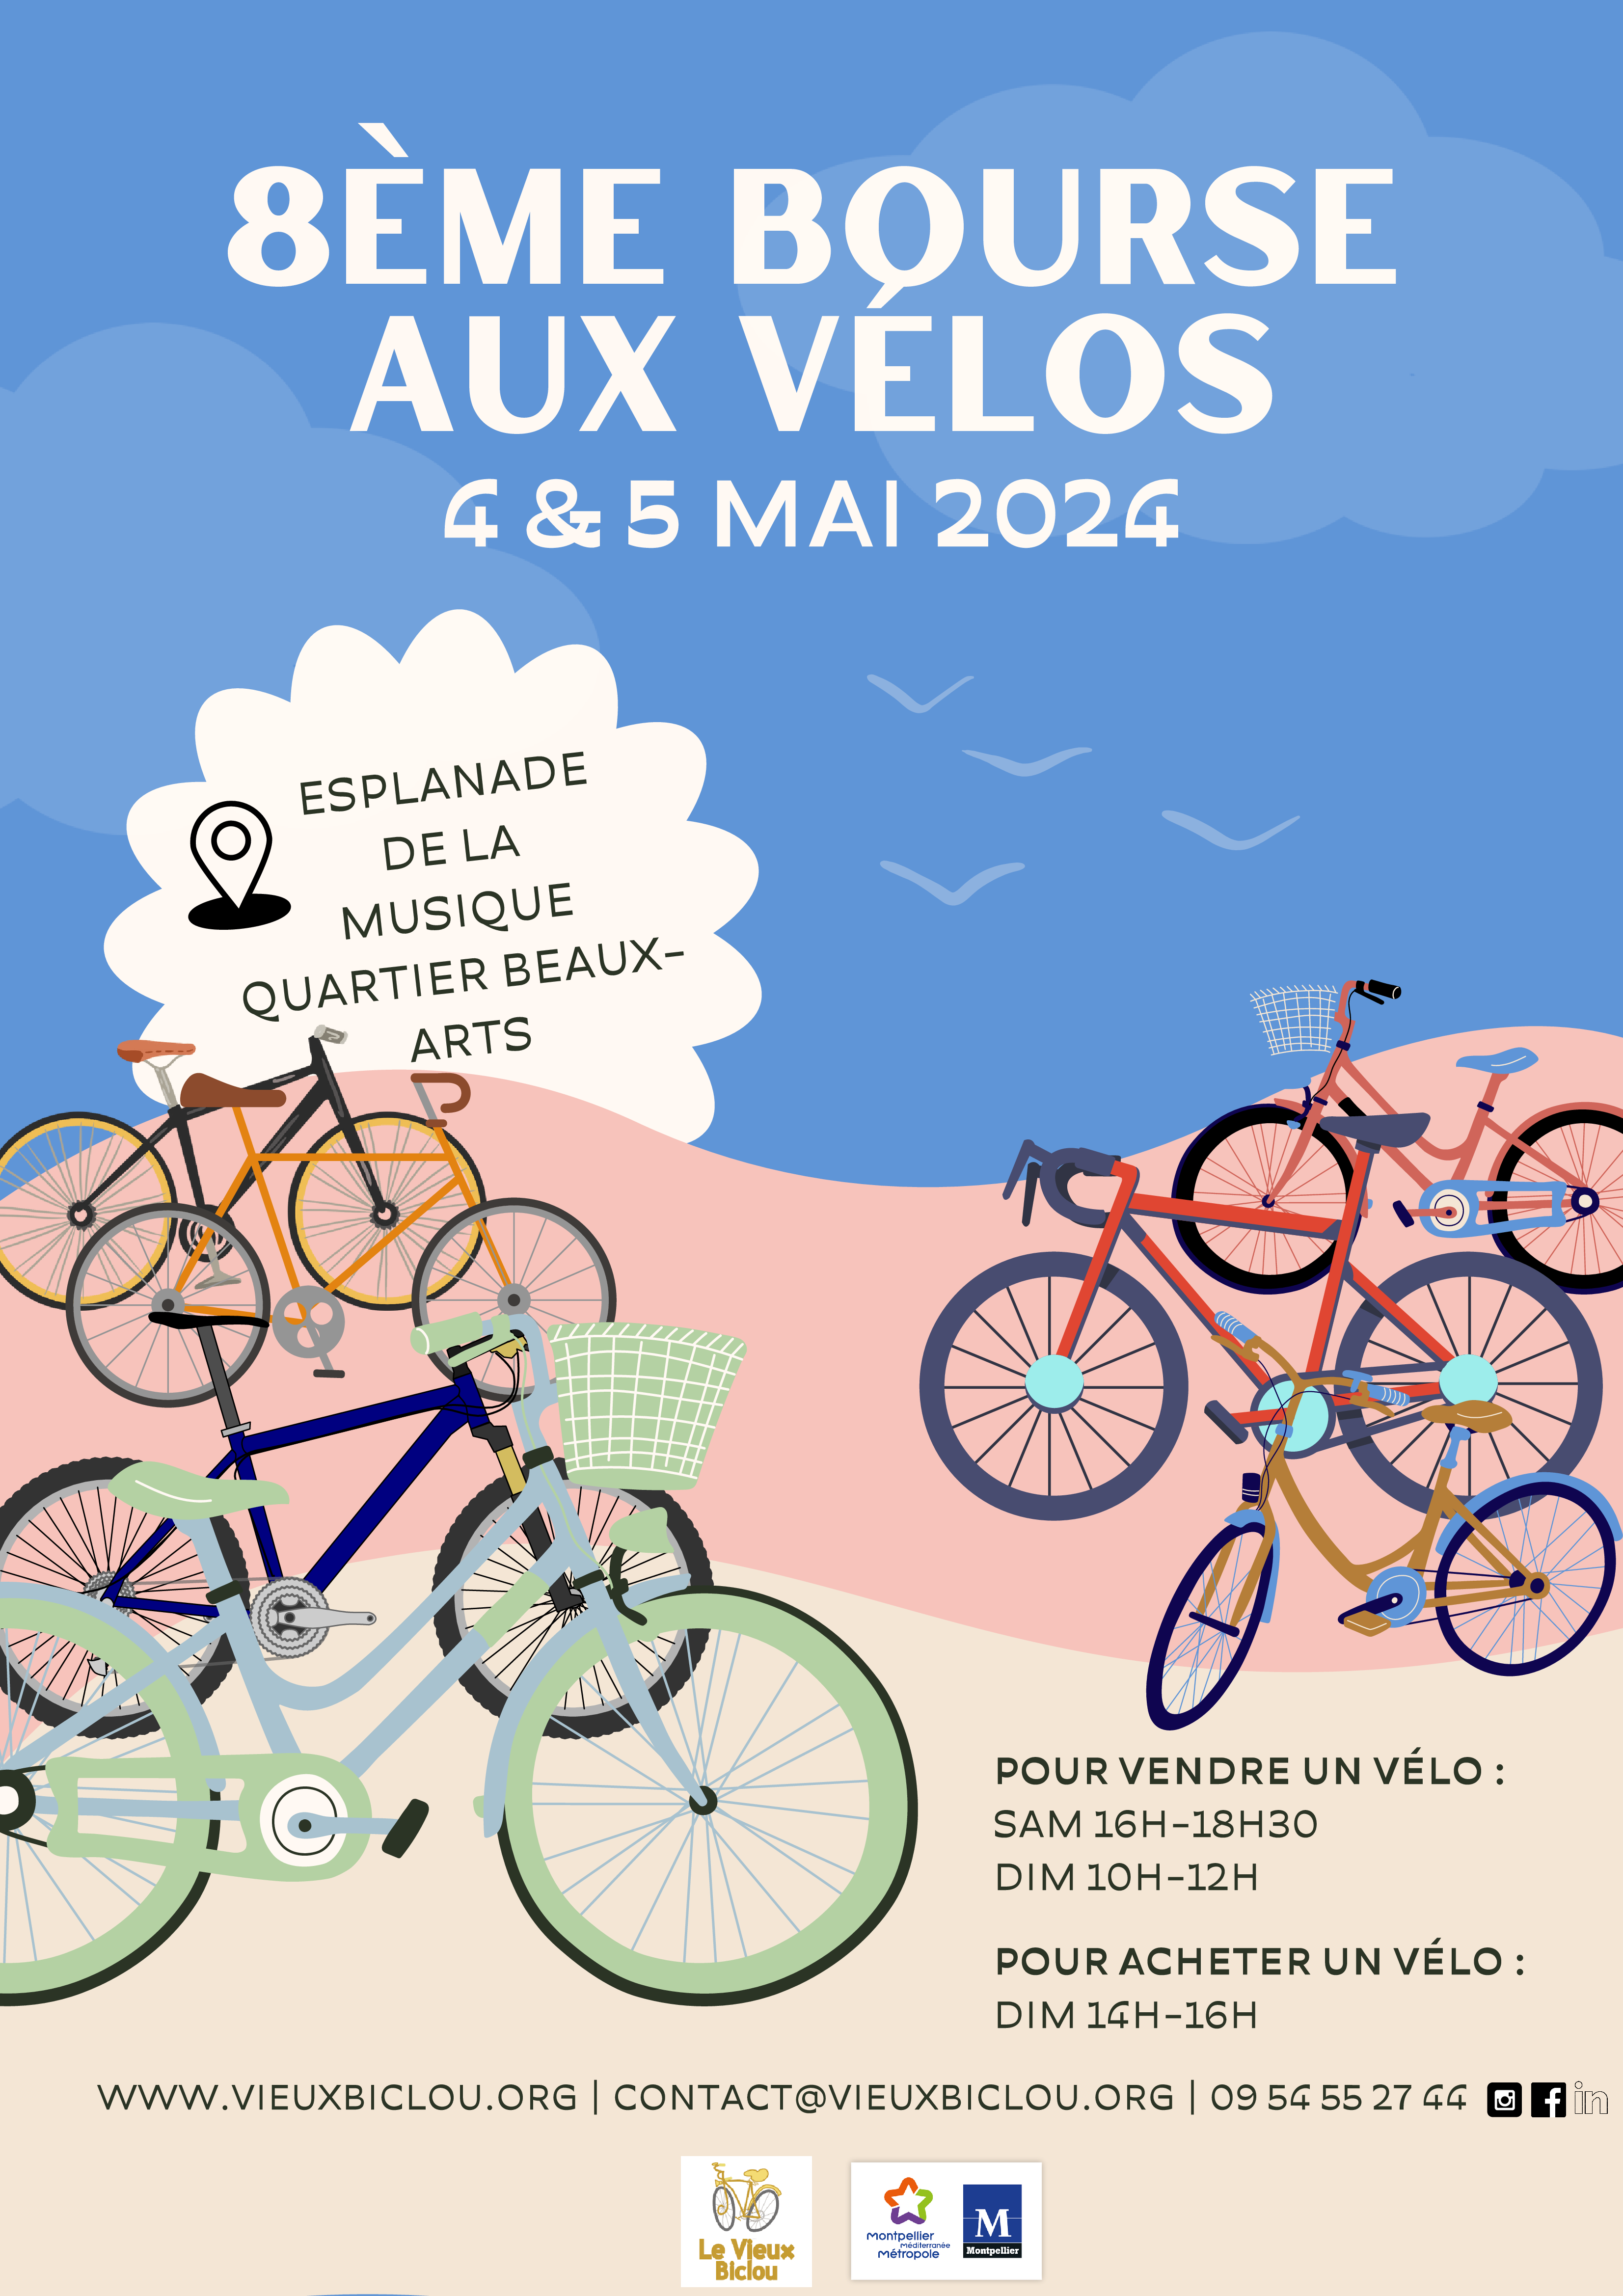 2024 - Bourse aux vélos à Montpellier les 4 et 5 Mai 2024 Affiche-bourse-v%C3%A9los-2024-1